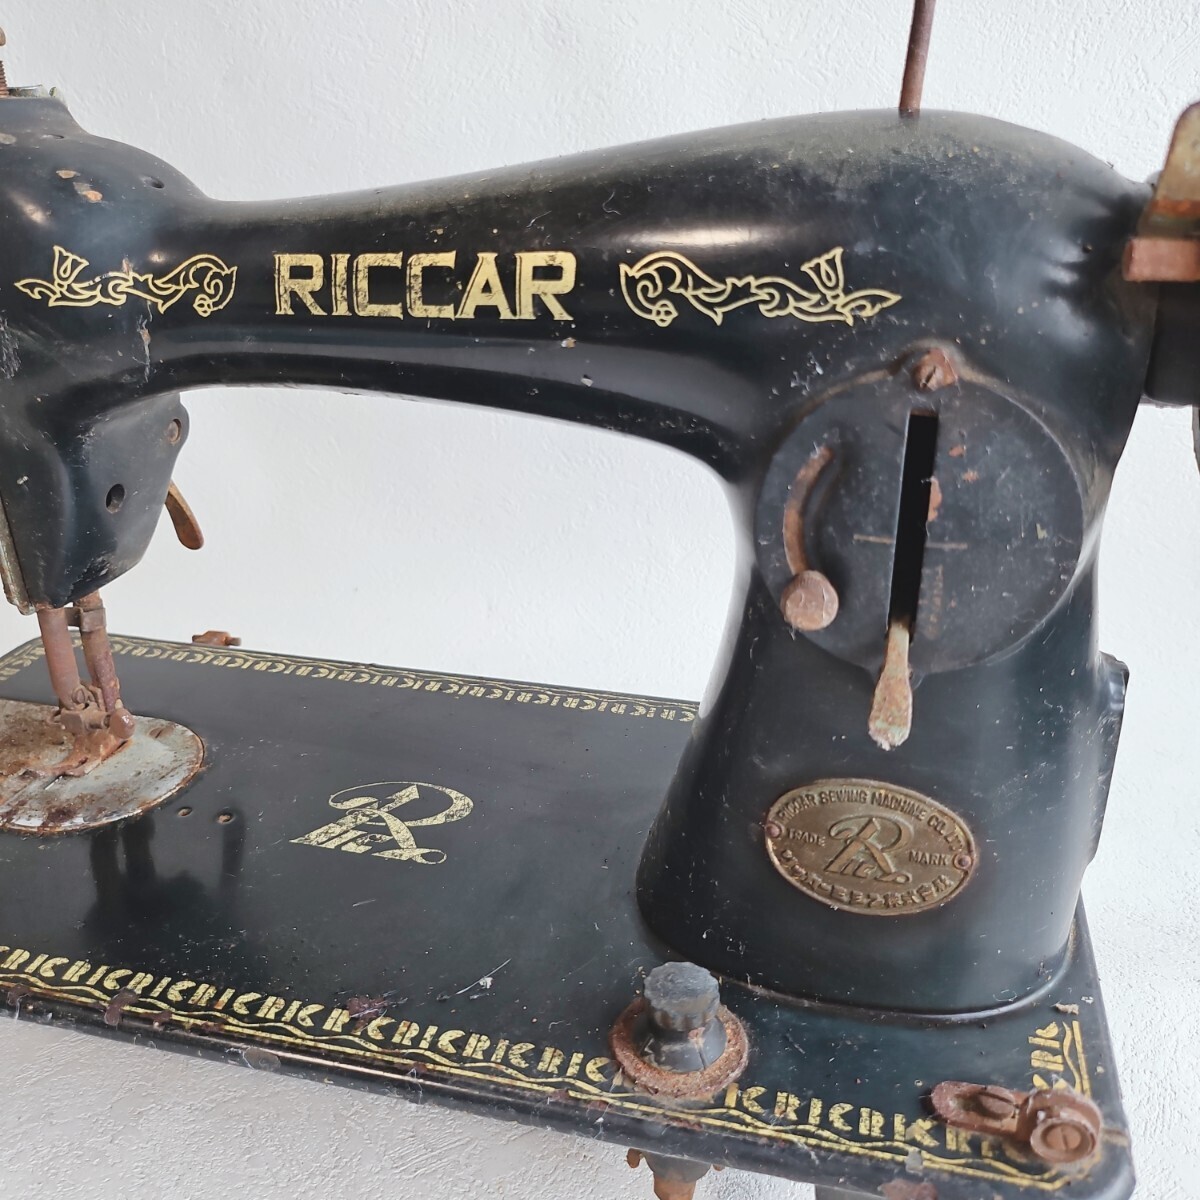 RICCARli car sewing machine antique sewing machine retro sewing machine 